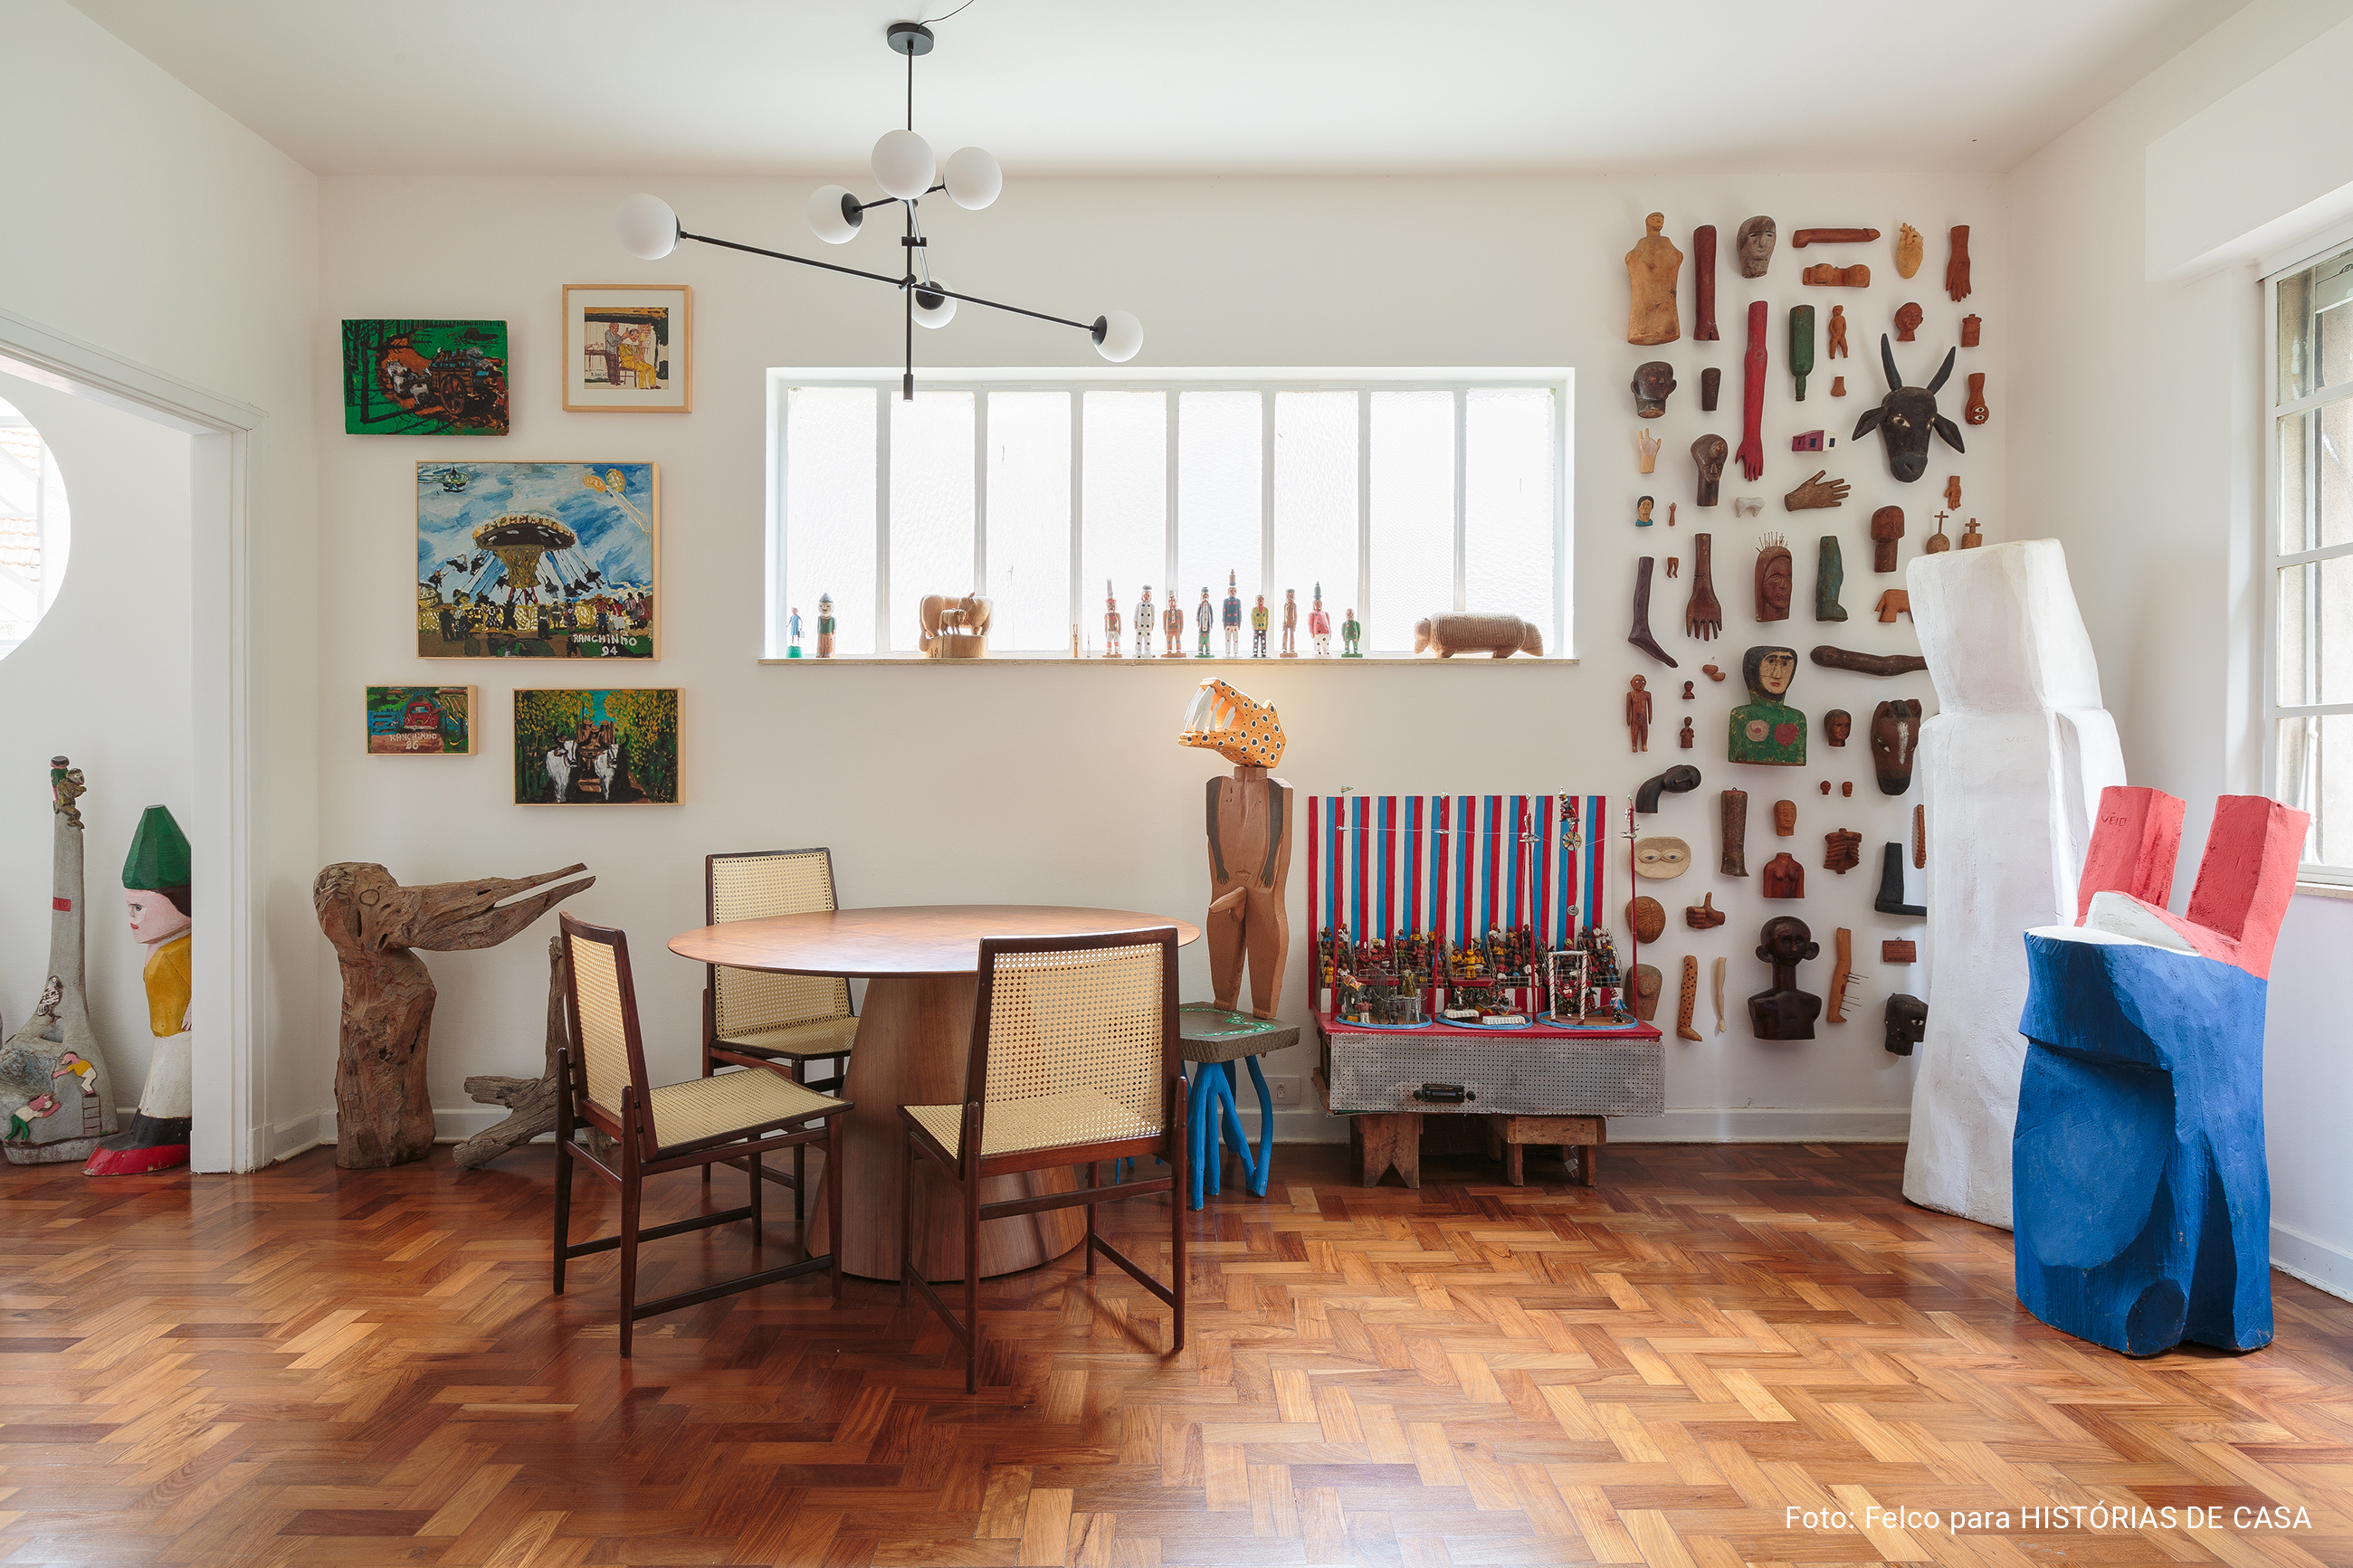 Artesanato e arte popular em apartamento com piso de tacos e luz natural.